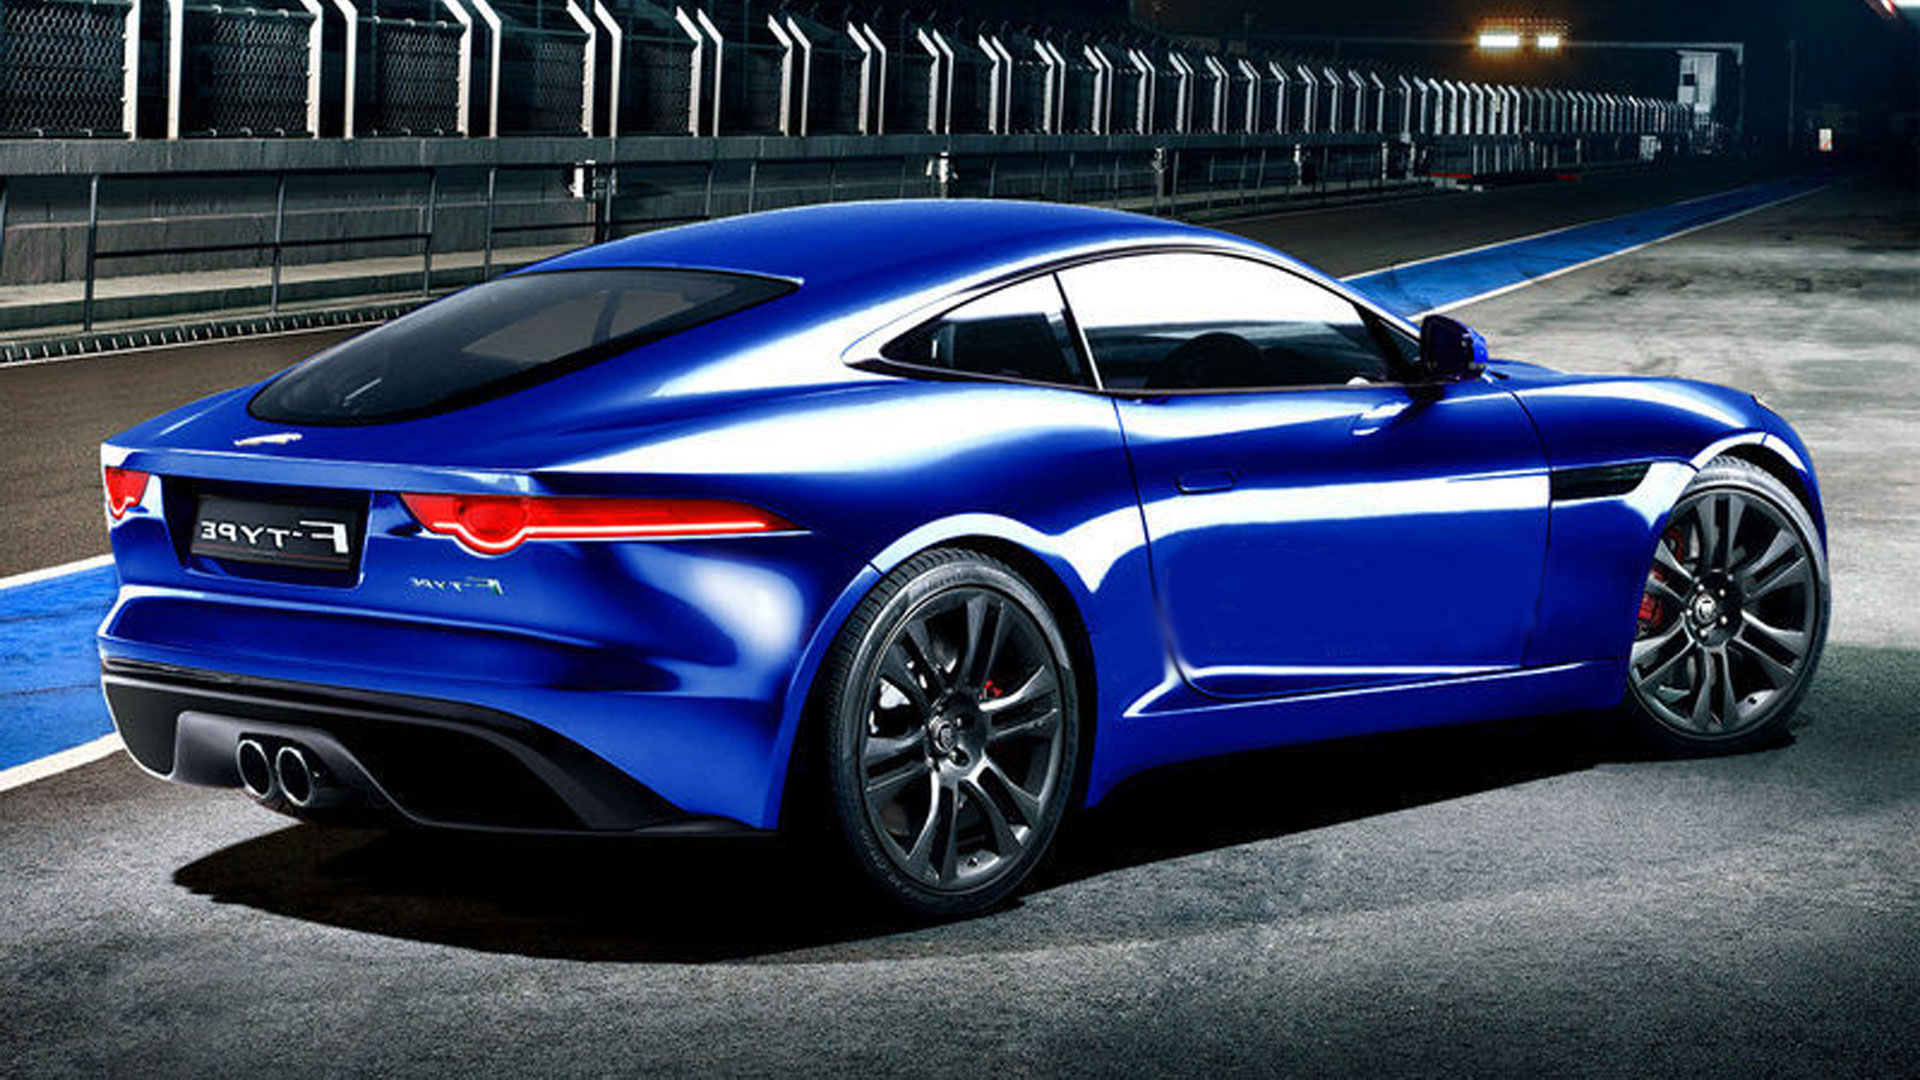 jaguar f type hd fond d'écran,véhicule terrestre,véhicule,voiture,voiture de sport,voiture de performance